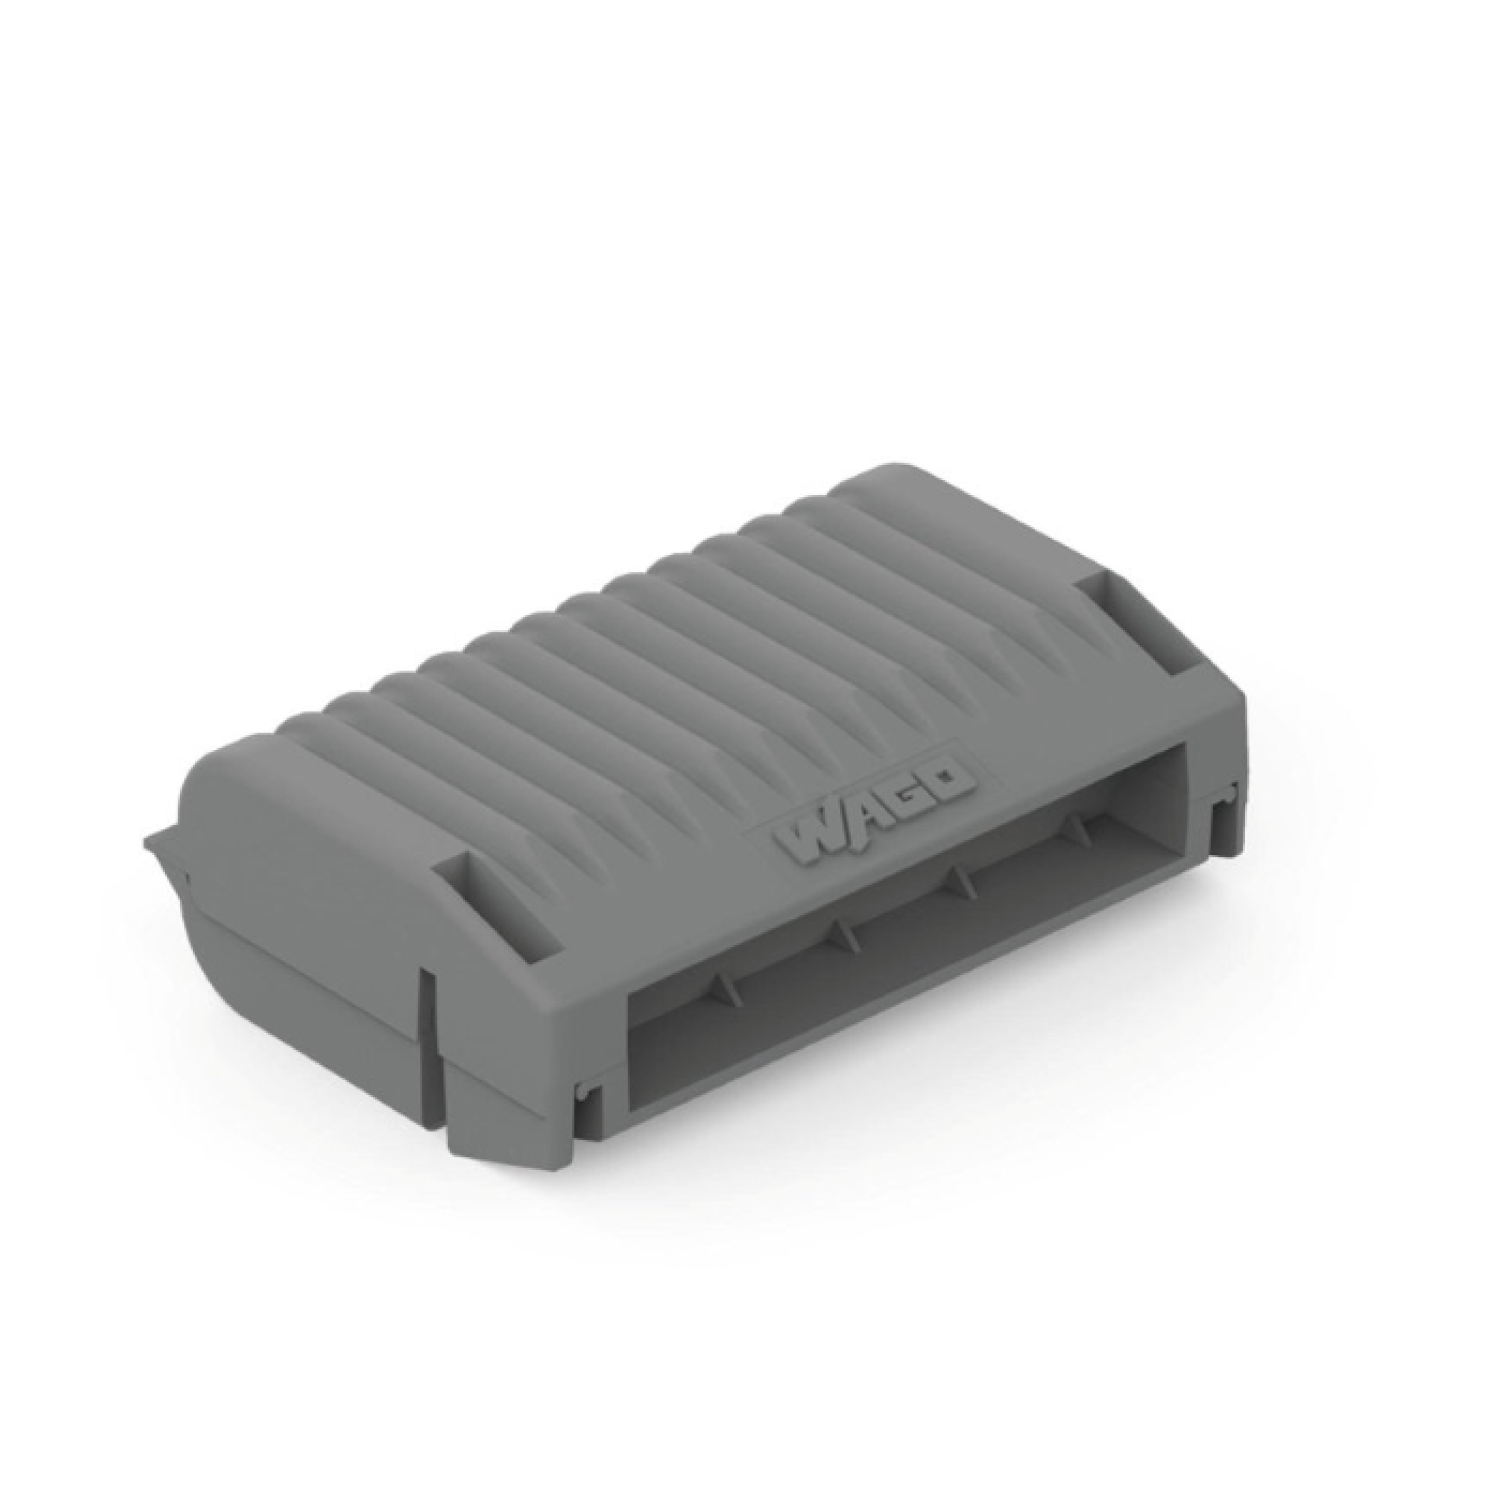 WAGO Gelbox pour pinces à souder - max. 4mm² - IPX8 - taille 3 - 3 pcs.-image